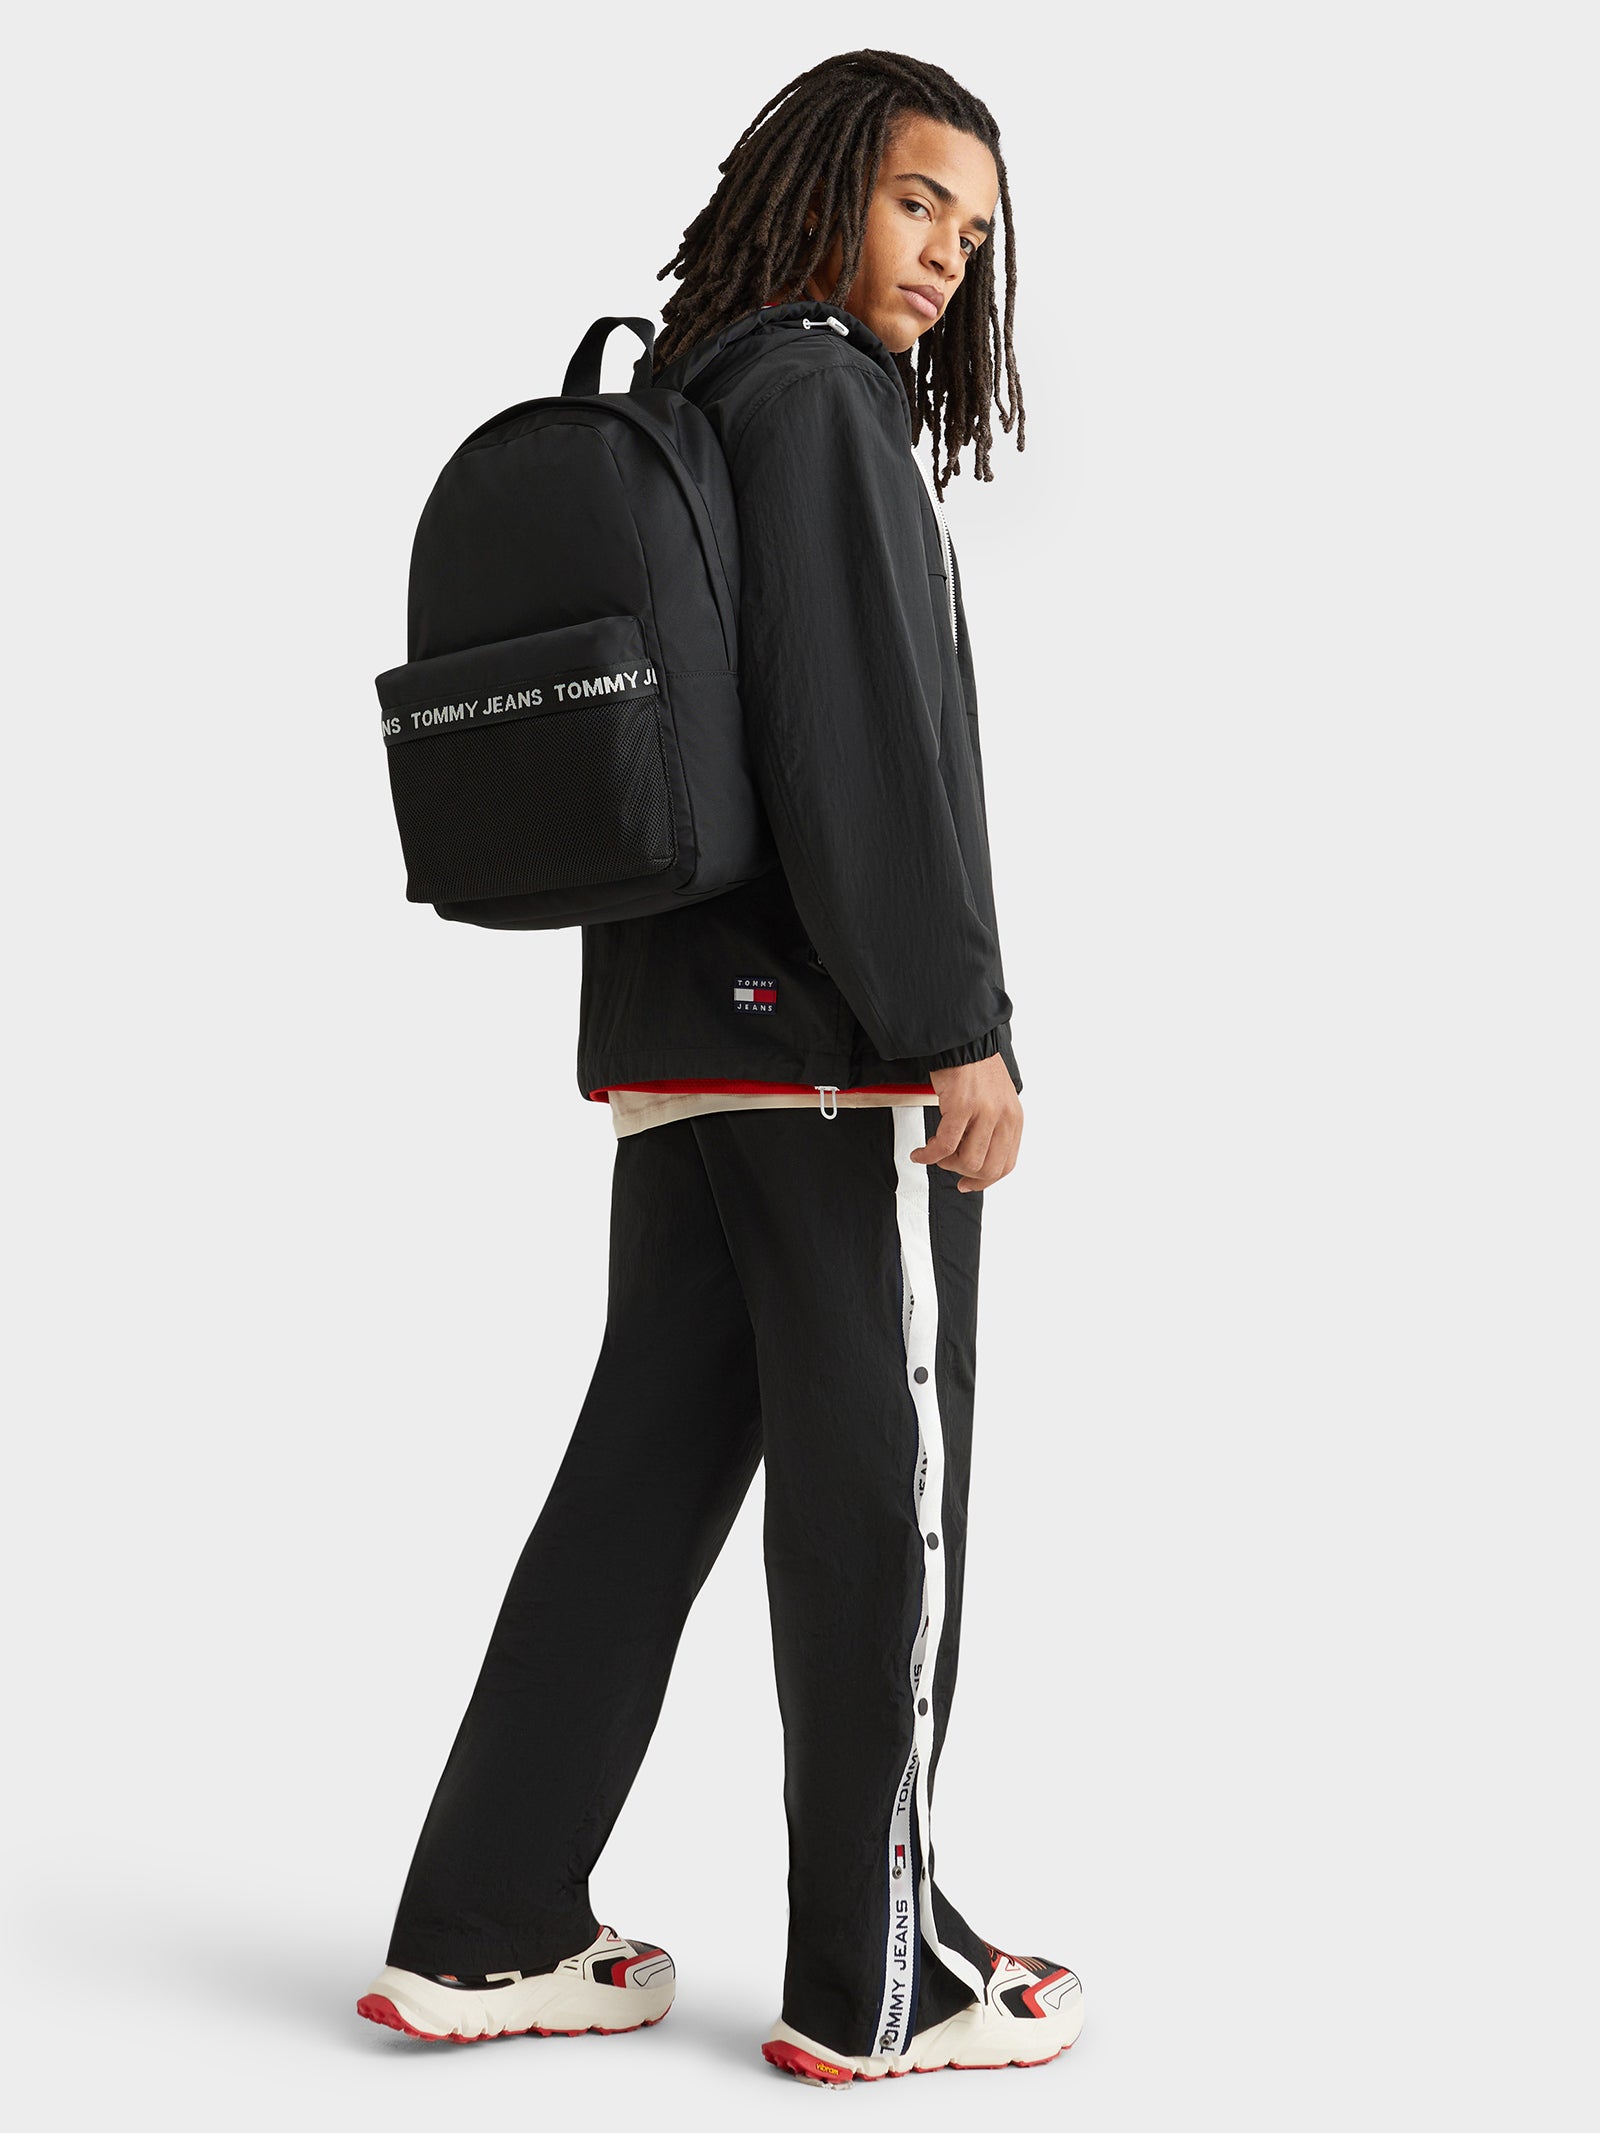 Essential Backpack in Black